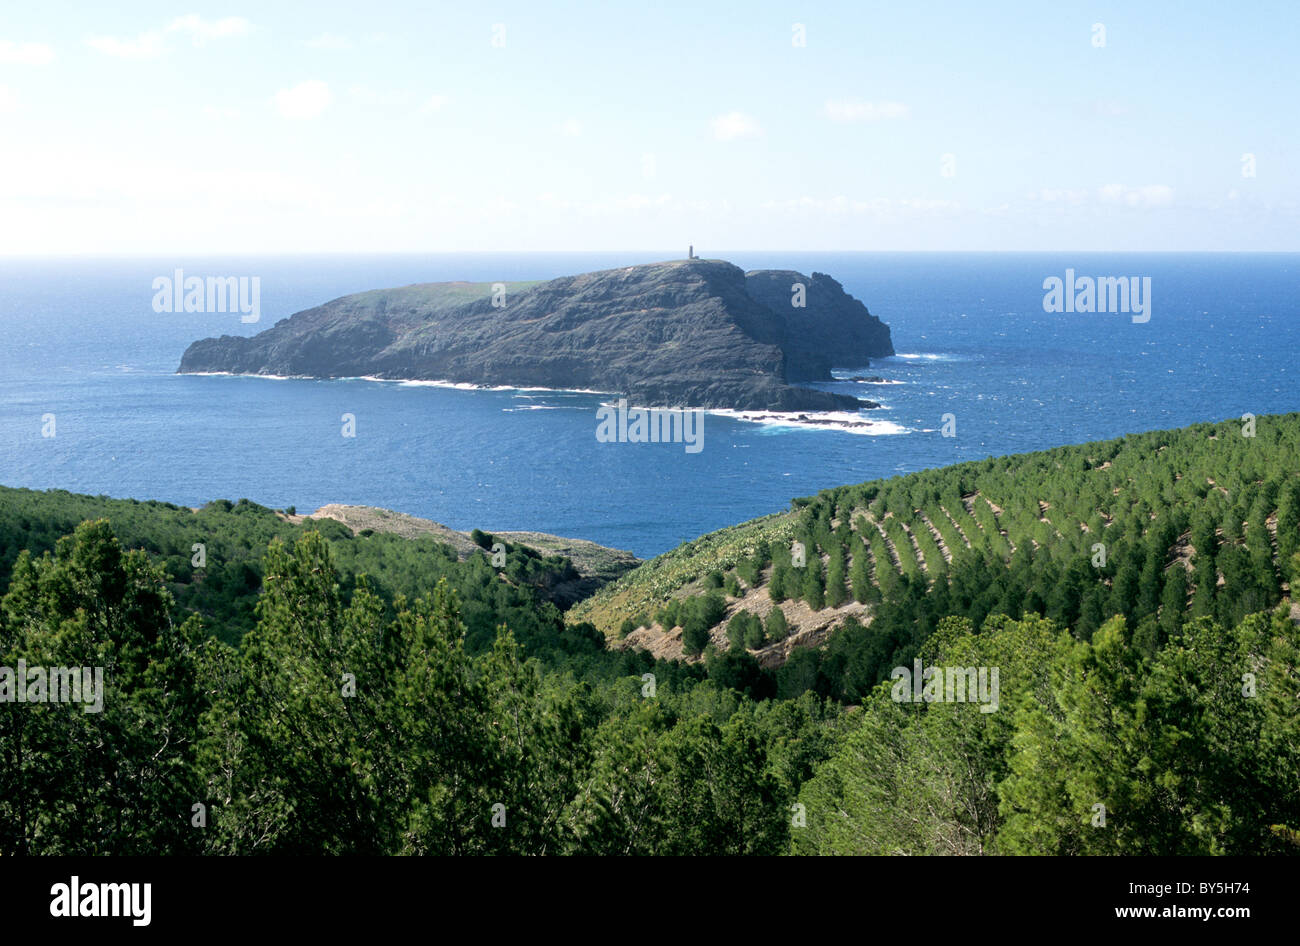 Ilhéu do Ferro viewed from Miradouro dos Morenos, a favourite lookout point on the island of Porto Santo Stock Photo